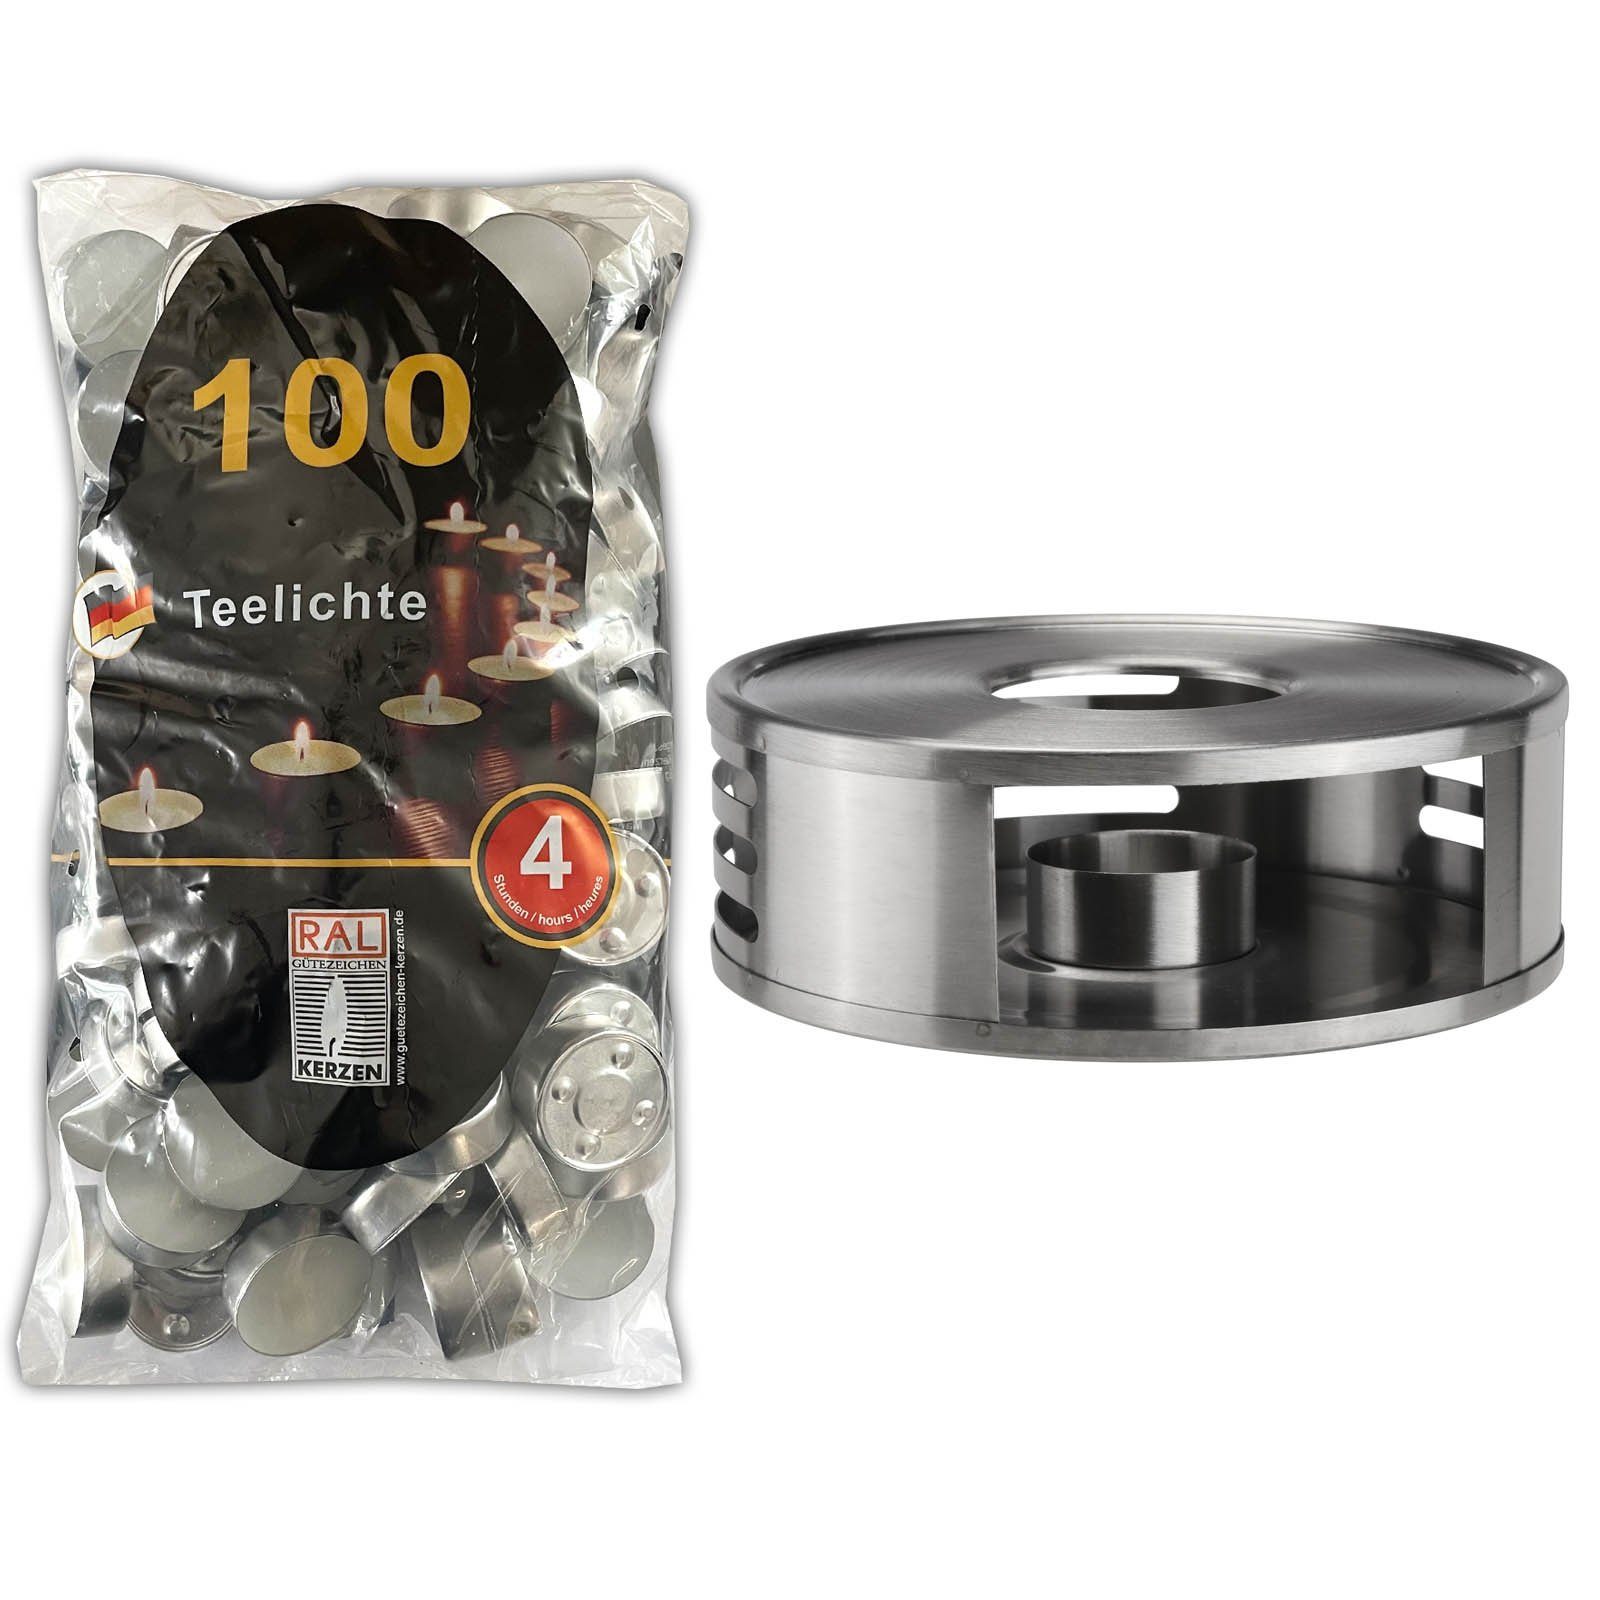 HAC24 Stövchen Teewärmer Speisenwärmer Tee Kaffee Warmhalteplatte,  Edelstahl, inkl. Teelichthalter und 100 Teelichter